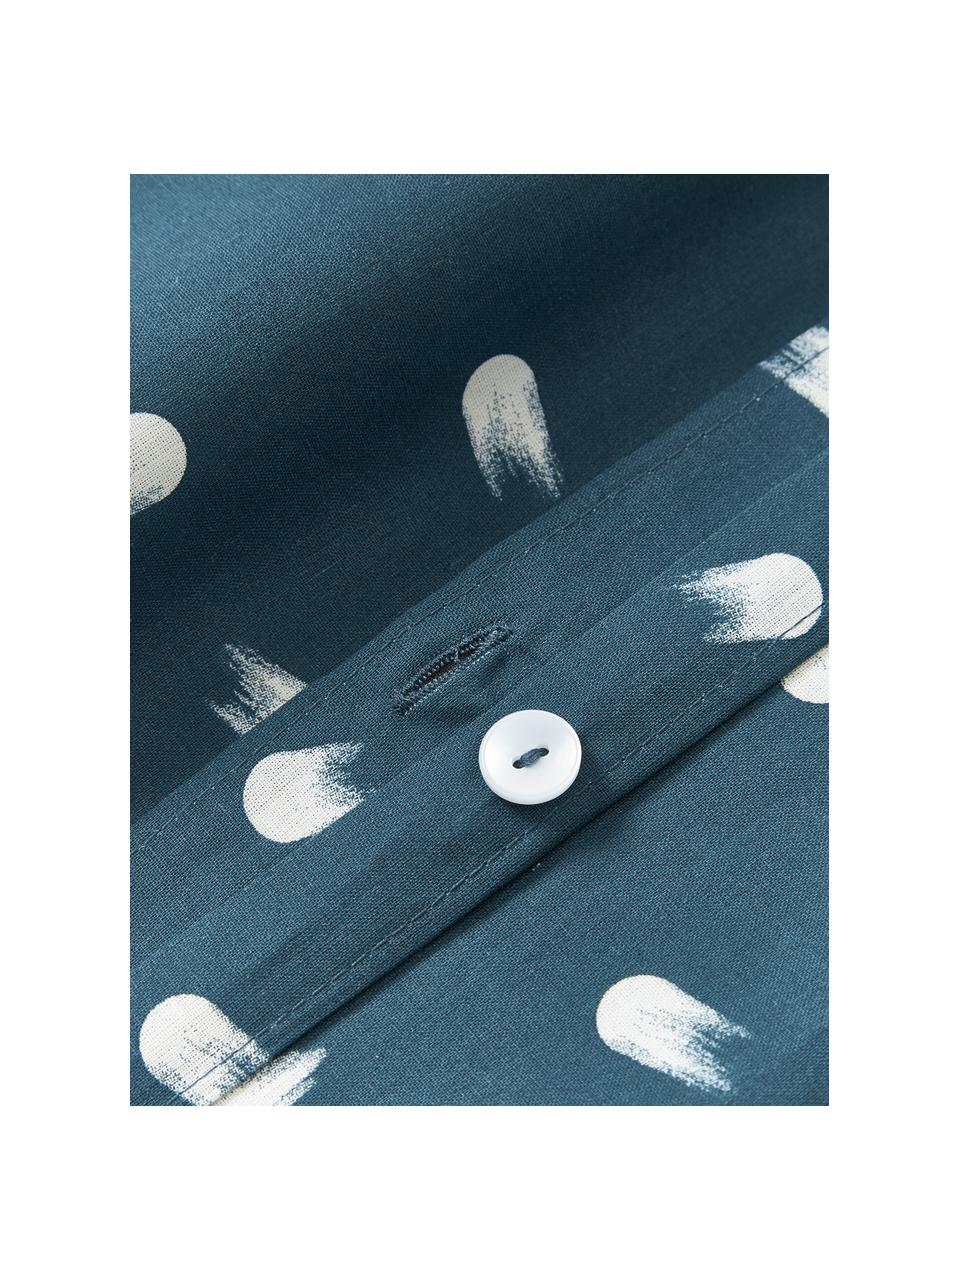 Baumwoll-Bettdeckenbezug Amma mit Tupfen-Muster, Webart: Renforcé Fadendichte 144 , Graublau, B 135 x L 200 cm